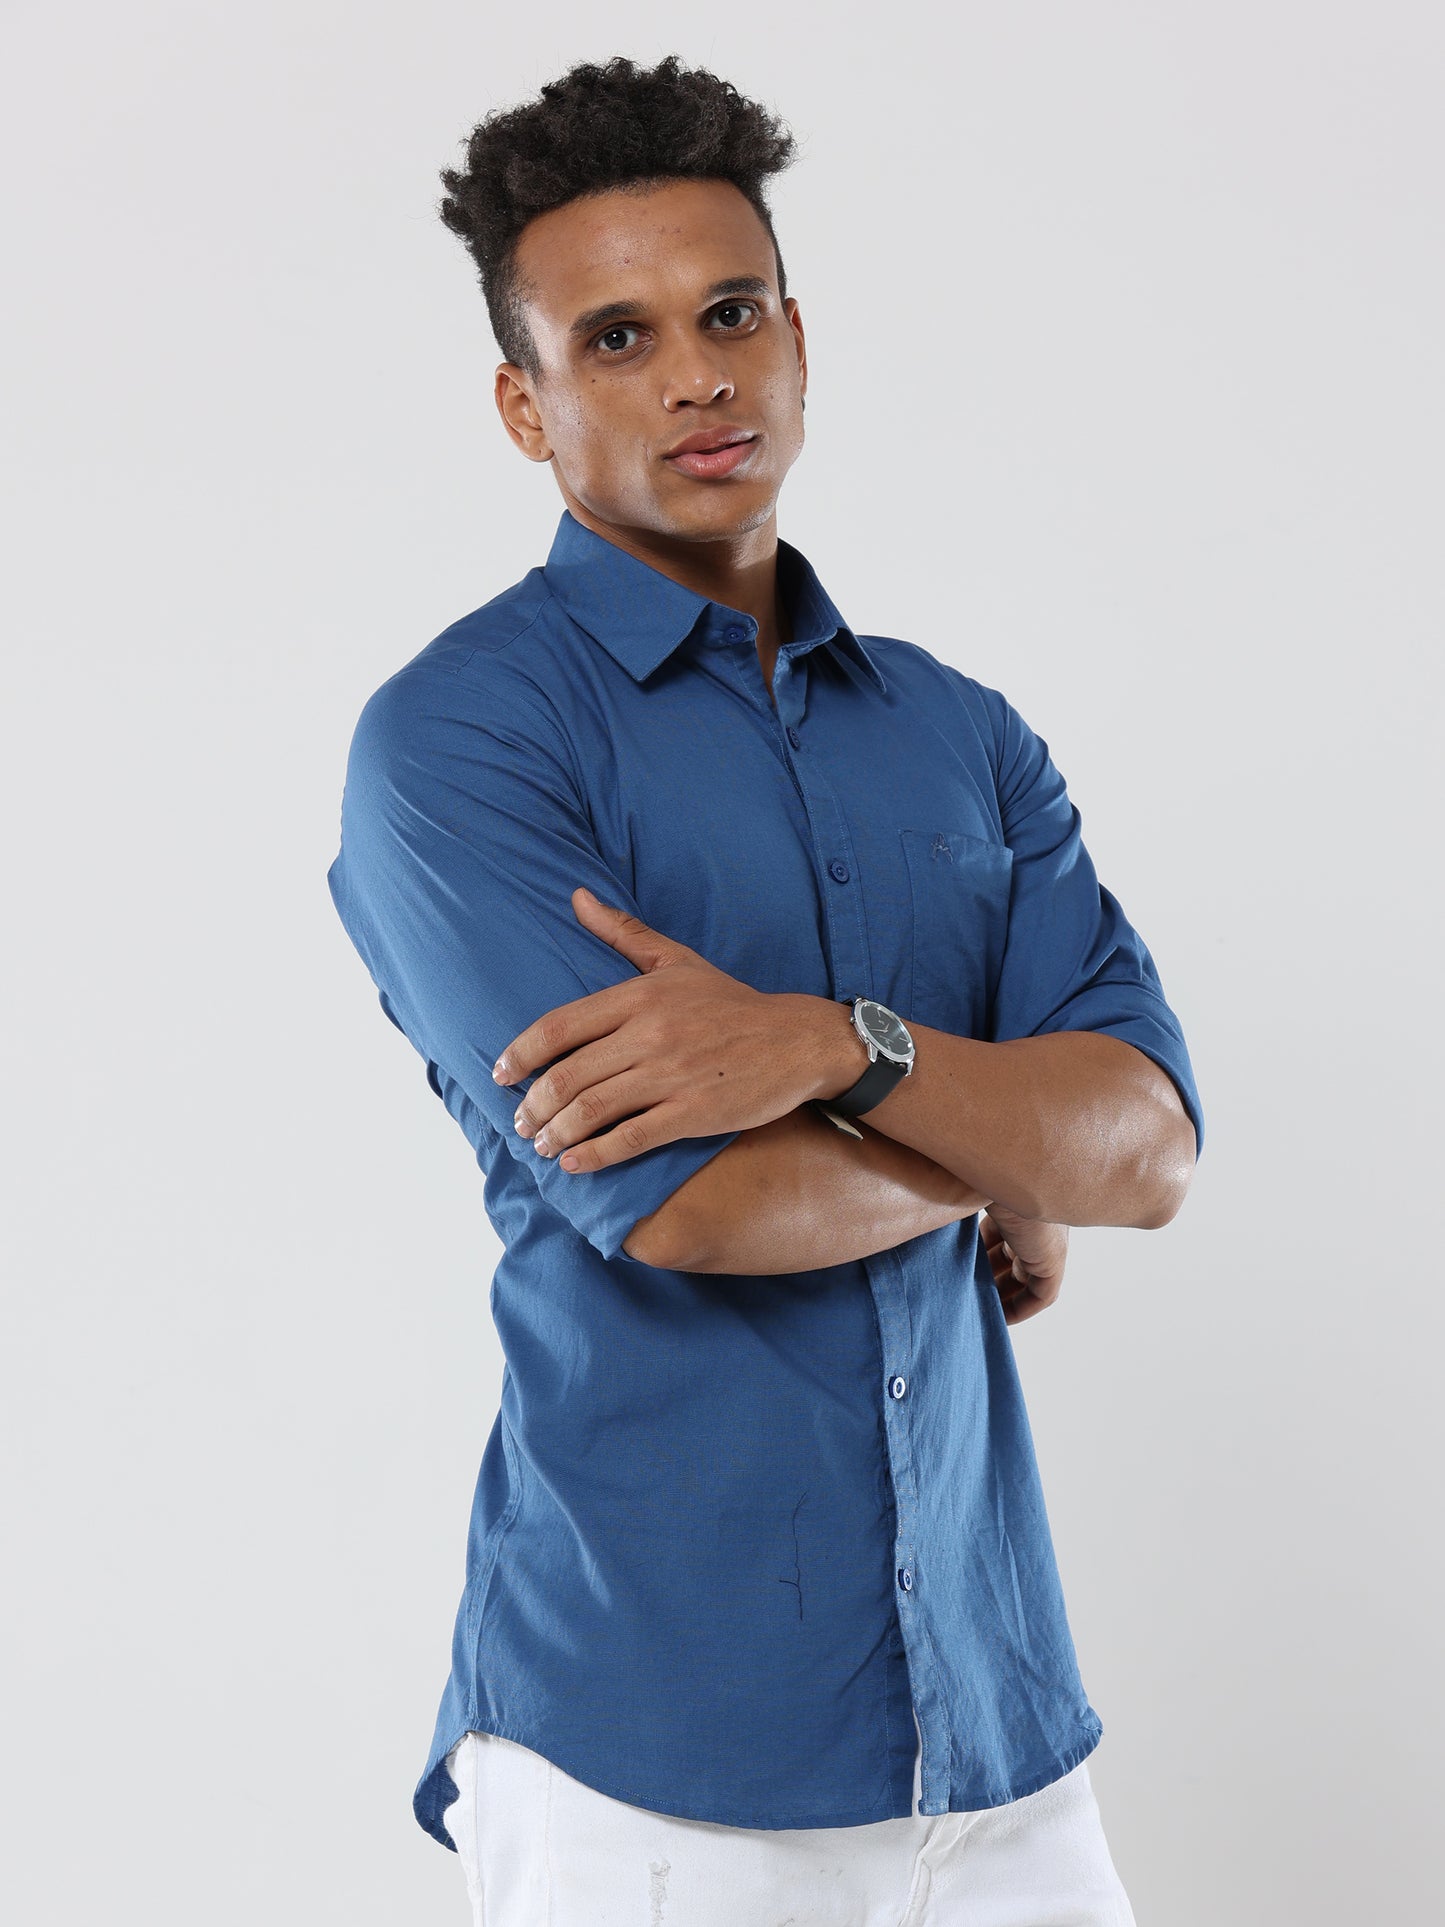 Royal Blue Plain premium Cotton linen shirt with pocket for men